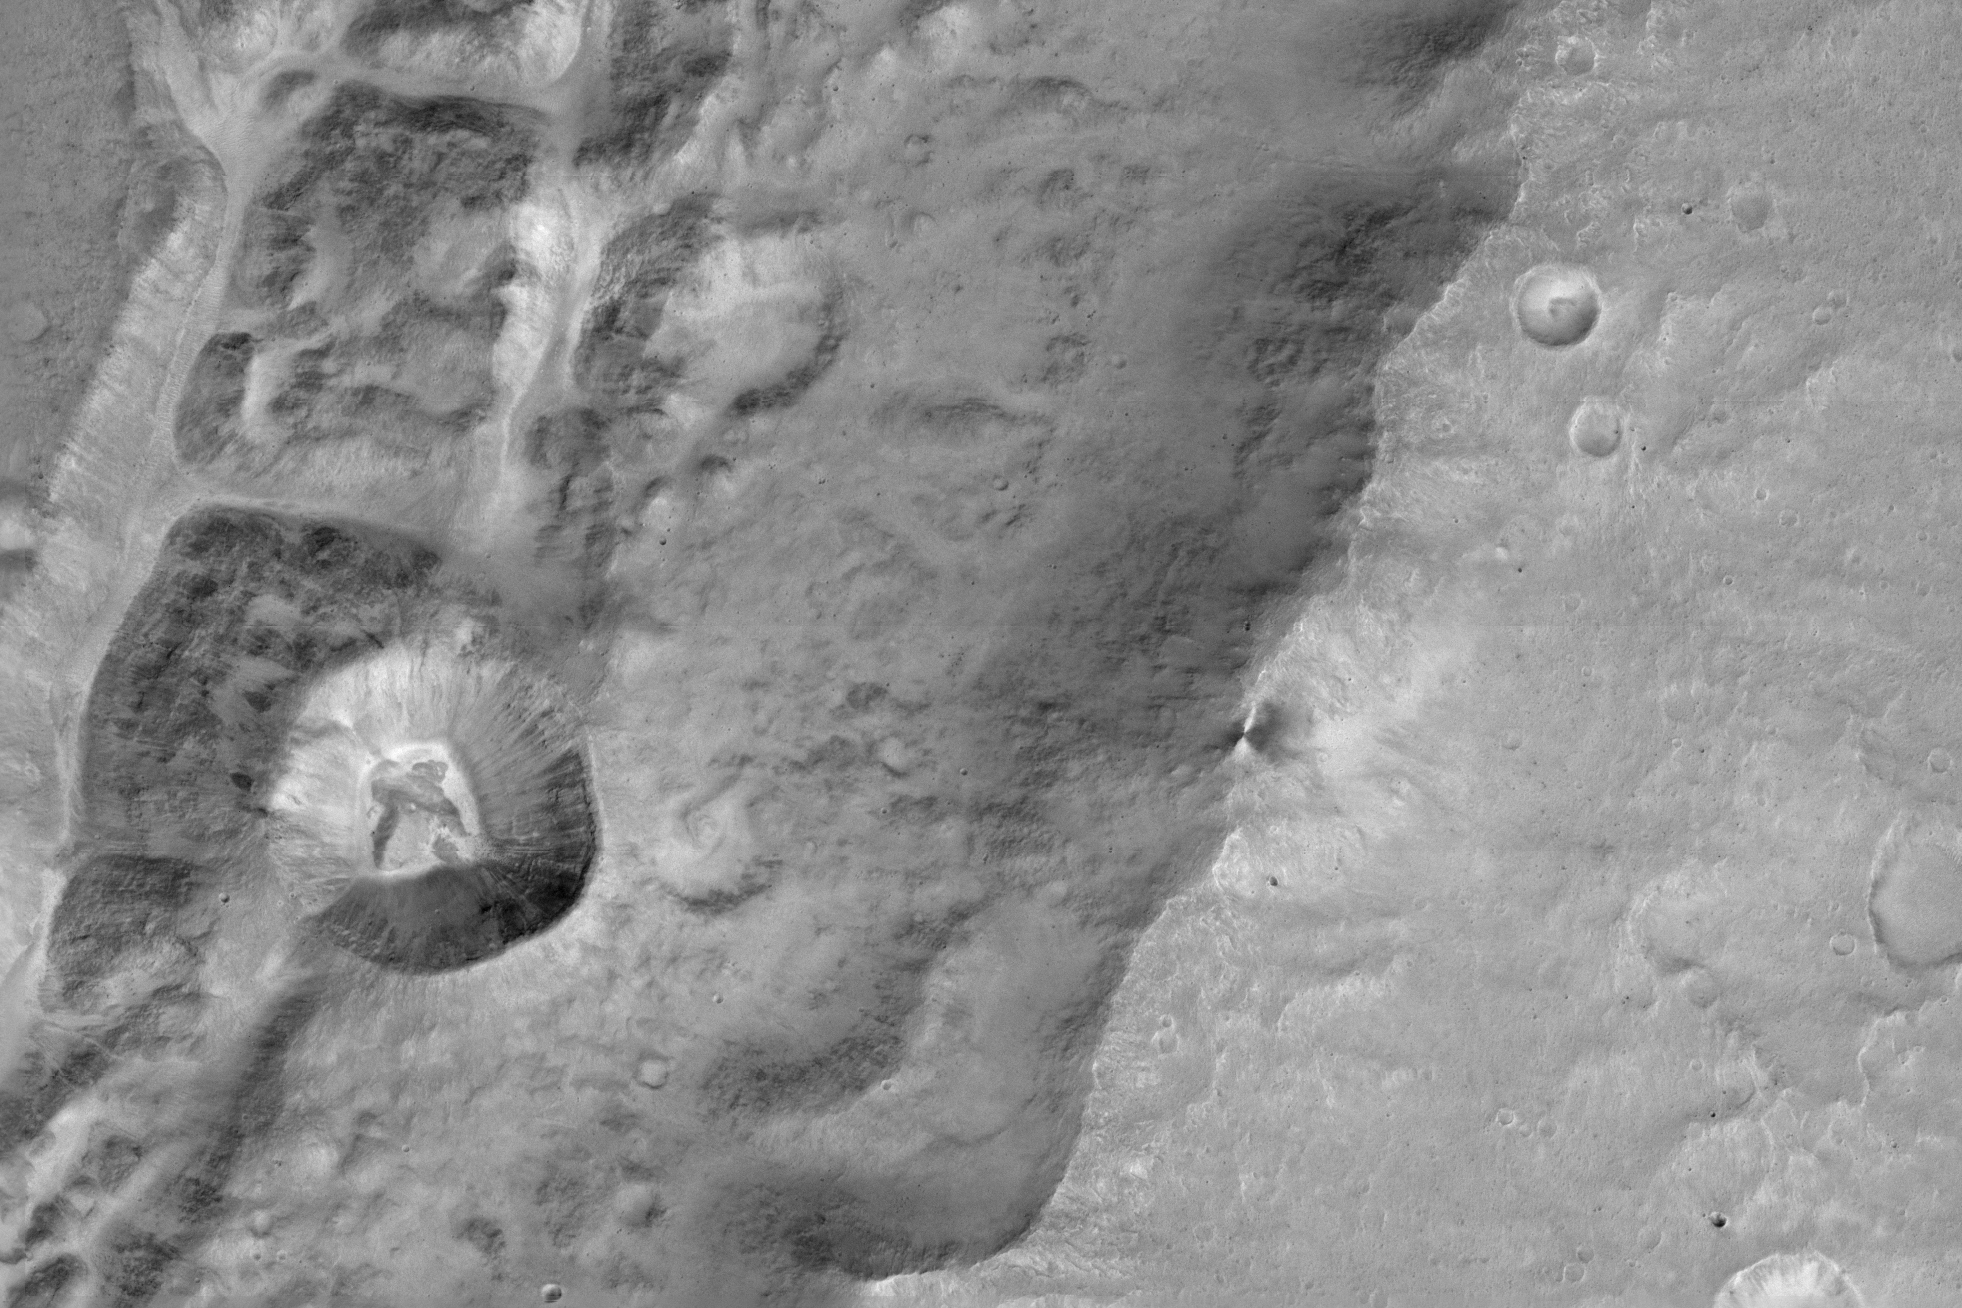 Bild eines Kraters von 1.4 km Durchmesser (links) auf dem Rand eines noch viel grösseren Kraters nahe dem Mars-Äquator. Die Auflösung beträgt 7.2m/Pixel. Die Bilder sind gestochen scharf und zeigen, dass die Datengewinnung der Kamera sehr gut funktioniert.